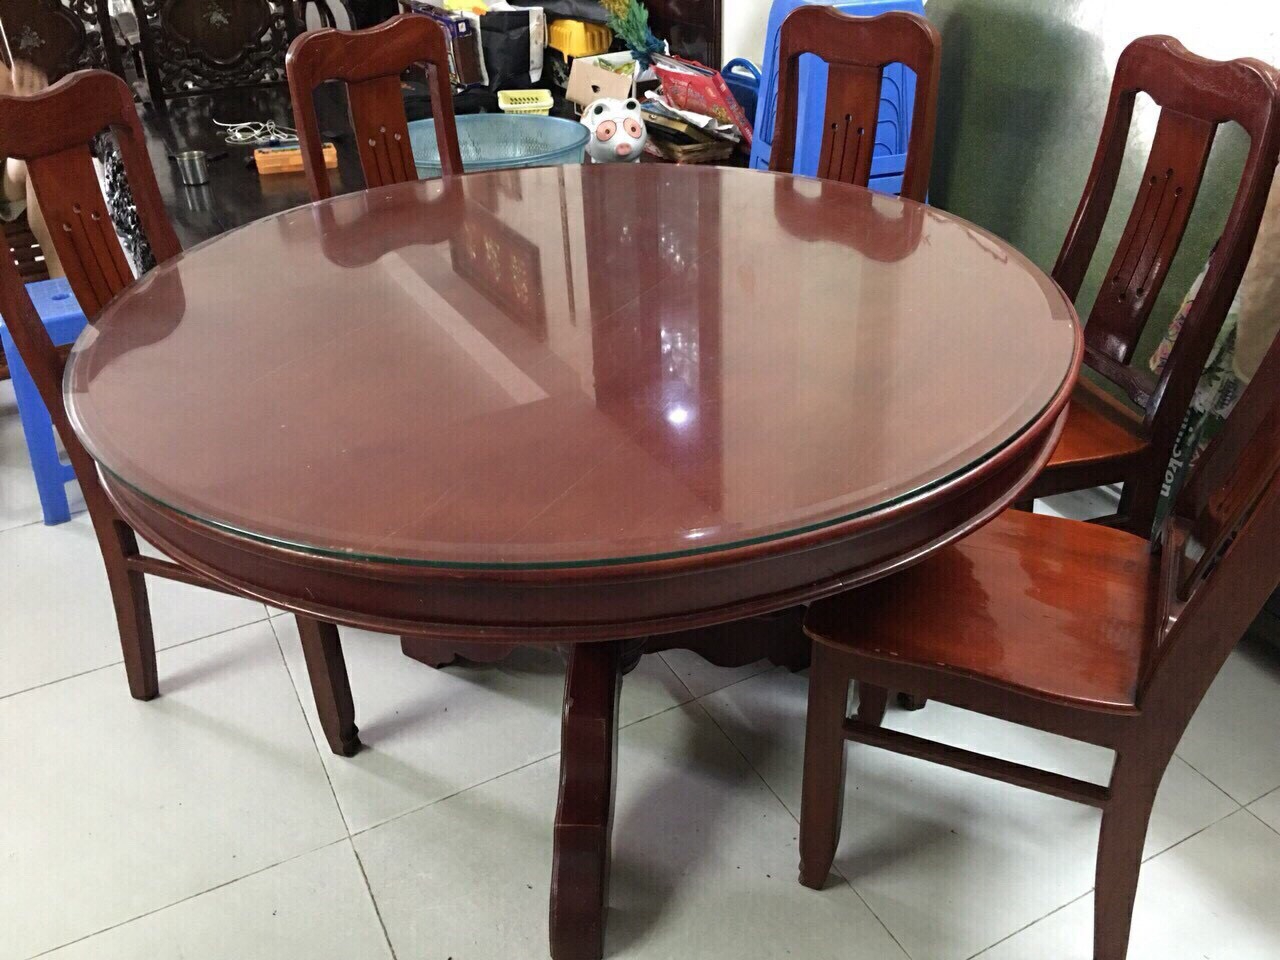 Trong bữa ăn sum họp, một chiếc bàn ăn tròn gỗ 10 ghế sẽ tạo không gian hòa quyện cho gia đình và bạn bè. Với thiết kế hiện đại và chất liệu gỗ cao cấp, chiếc bàn này chắc chắn sẽ làm hài lòng những tín đồ yêu thích nội thất đẹp.